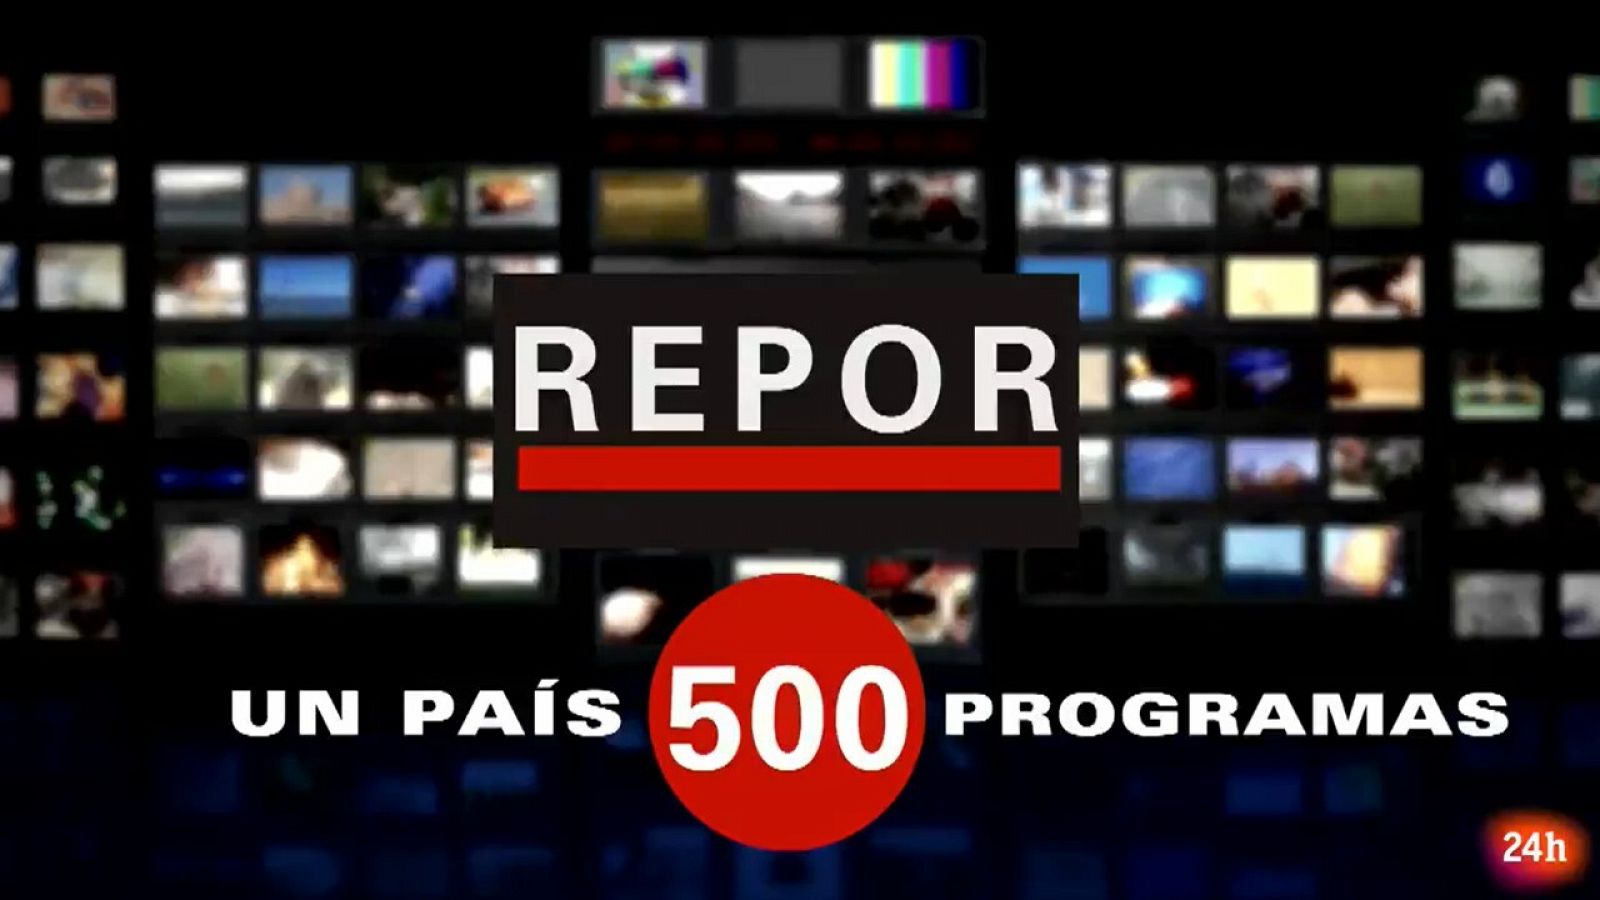 Esta semana el programa de TVE Repor está de celebración: emiten el programa 500. 